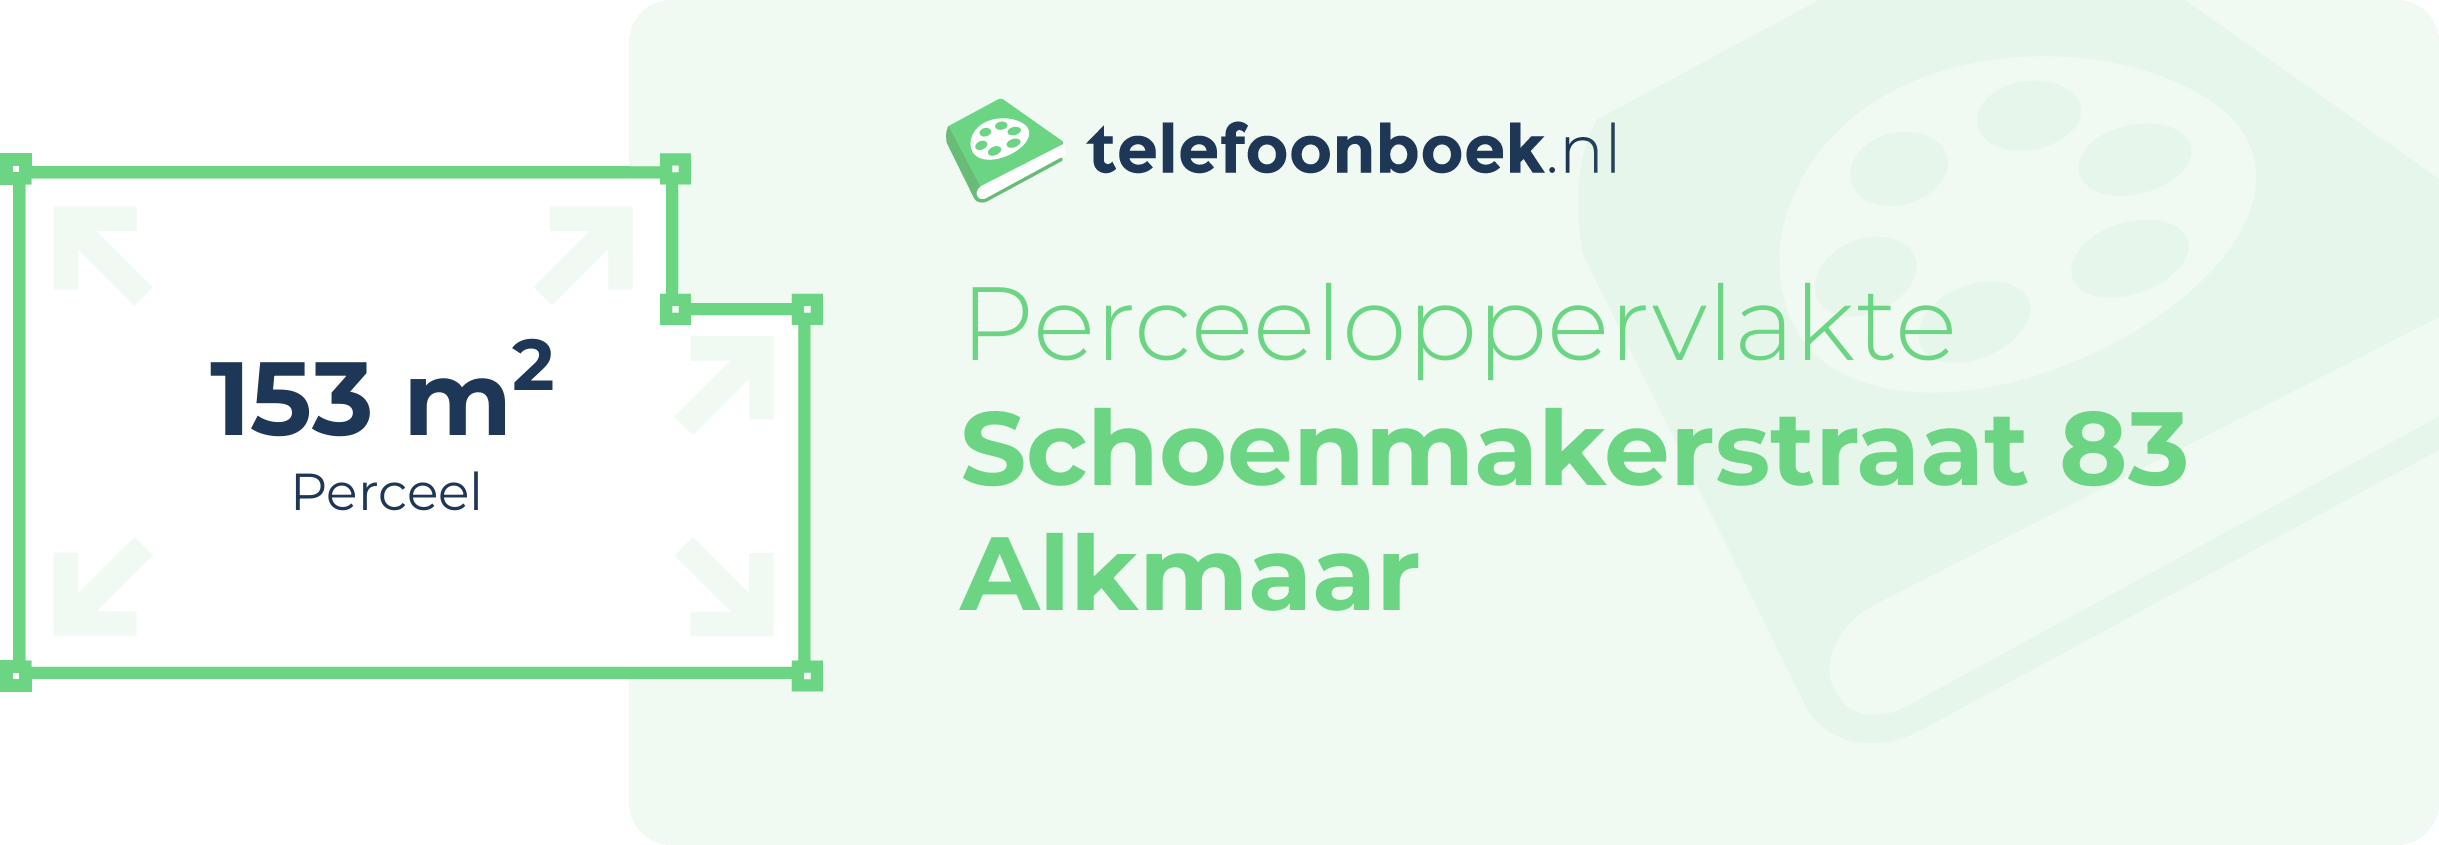 Perceeloppervlakte Schoenmakerstraat 83 Alkmaar